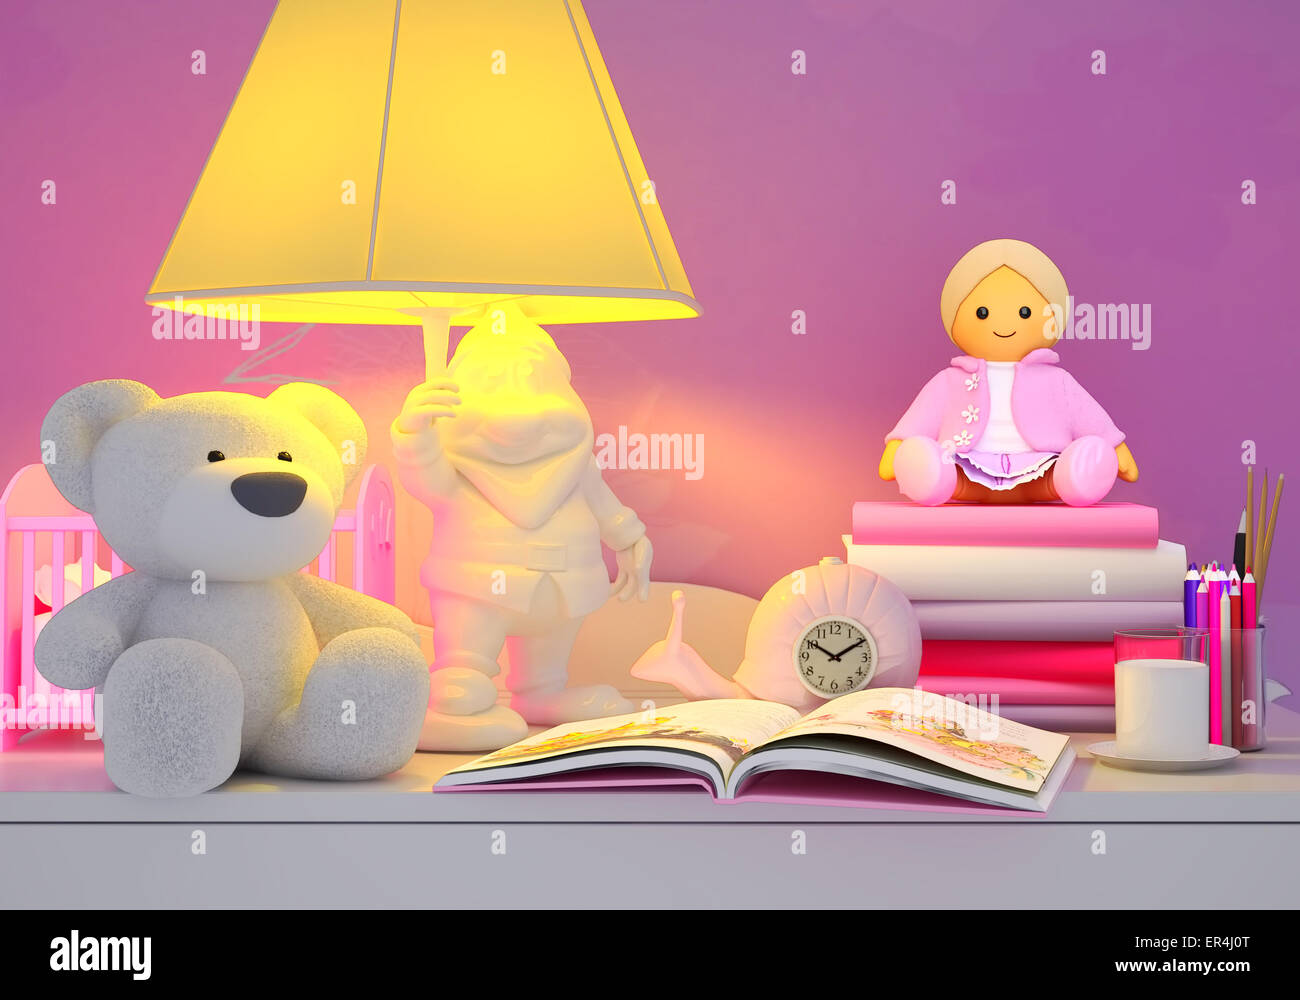 Kinderspielzeug, Bücher, farbige Stifte, Wecker, die Lampe, Milch in ein  Glas befinden sich auf einem Tisch Stockfotografie - Alamy